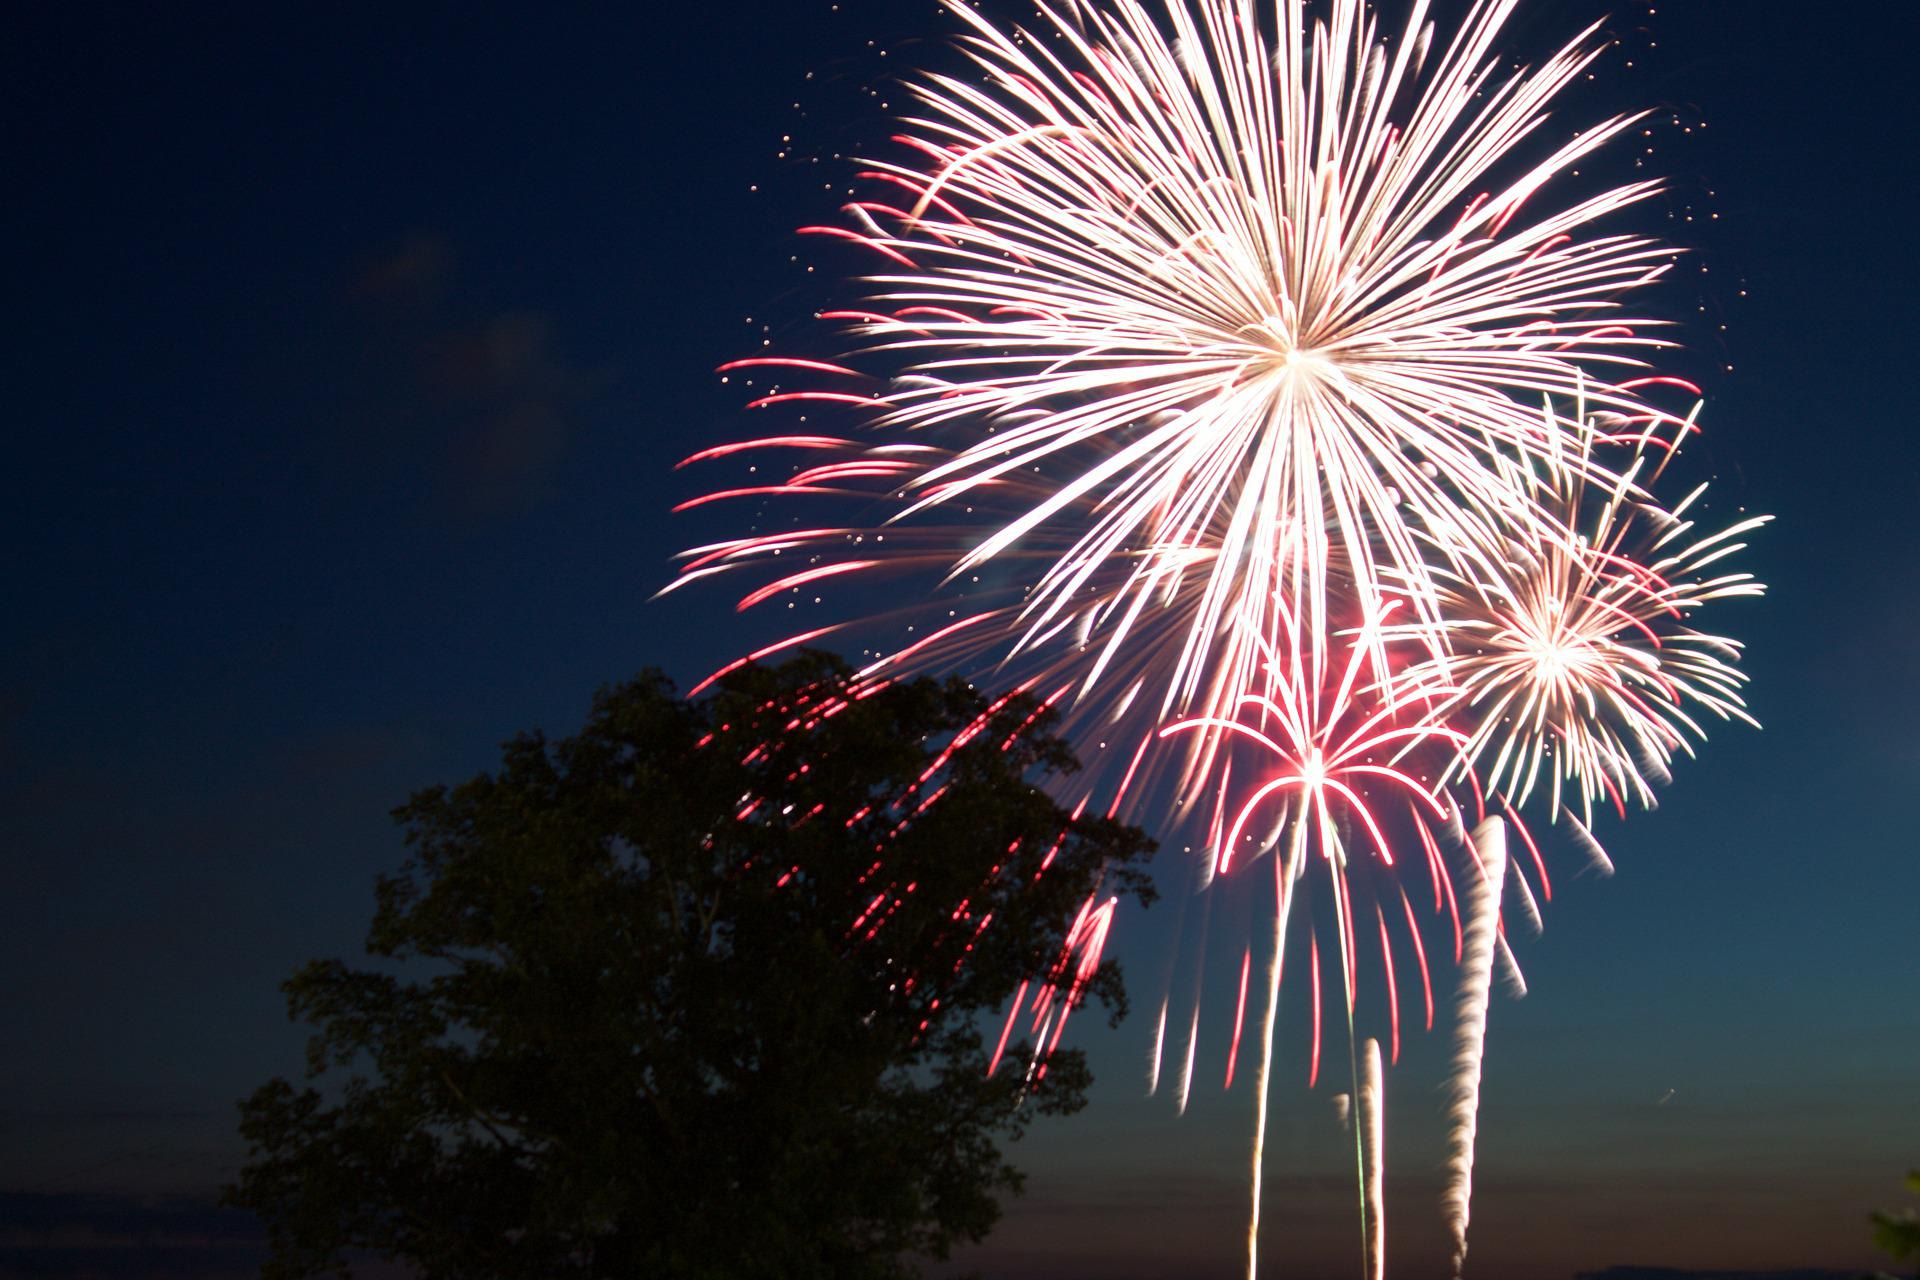 Wochenendaktivitäten & Feuerwerk am 4. Juli (Independence Day) in Port Clinton